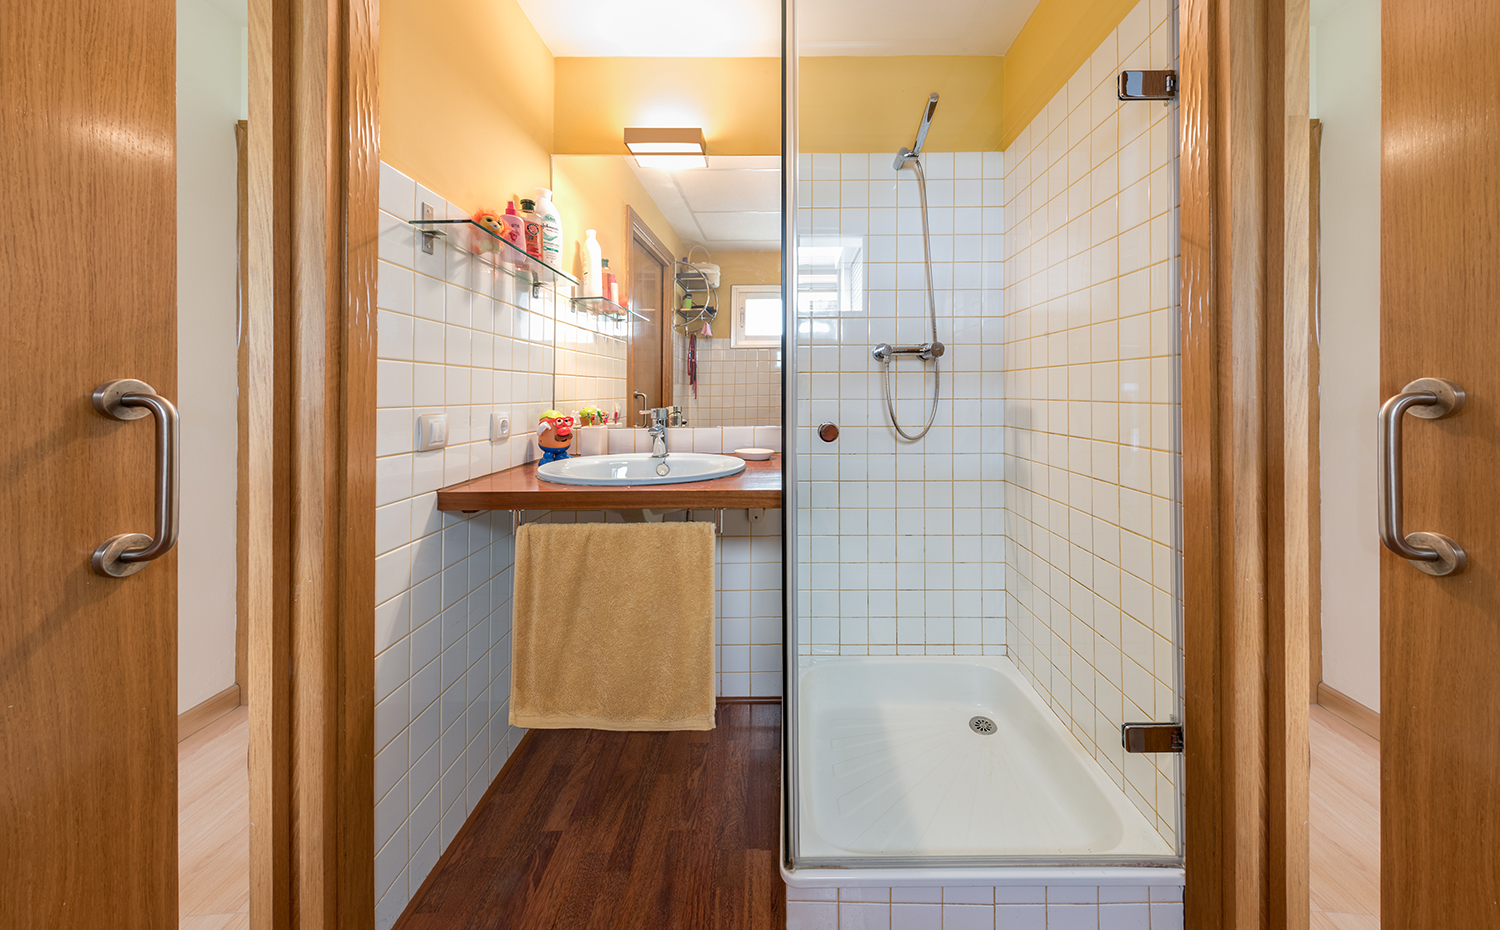 13,Tiro de Linea,fotowork.es. El baño secundario cuenta con un diseño sencillo y funcional apto para los más pequeños de la casa, con aplacados de gres con llagas pintadas en color para una apuesta más juvenil